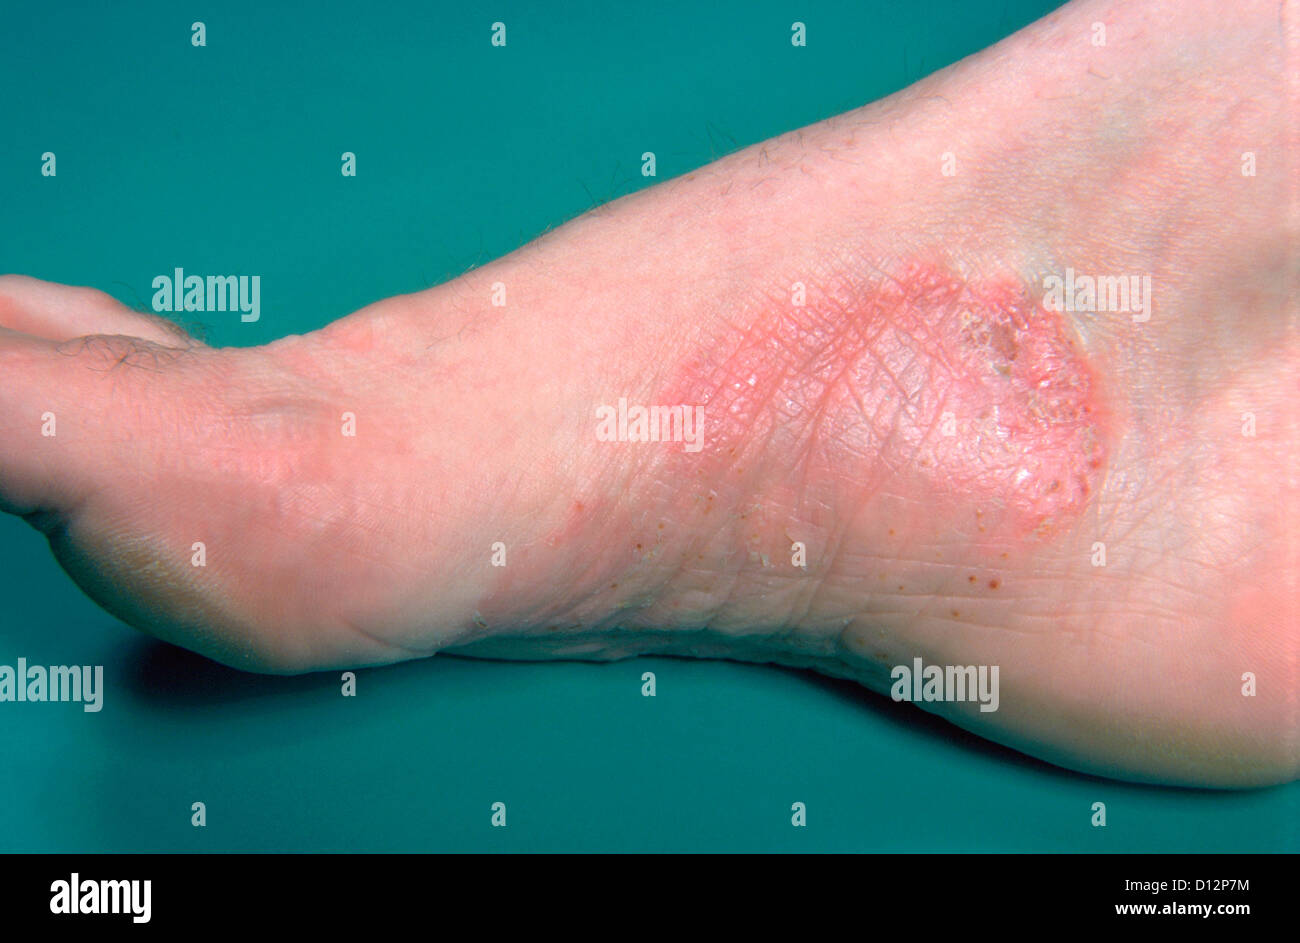 Psoriasis foot immagini e fotografie stock ad alta risoluzione - Alamy